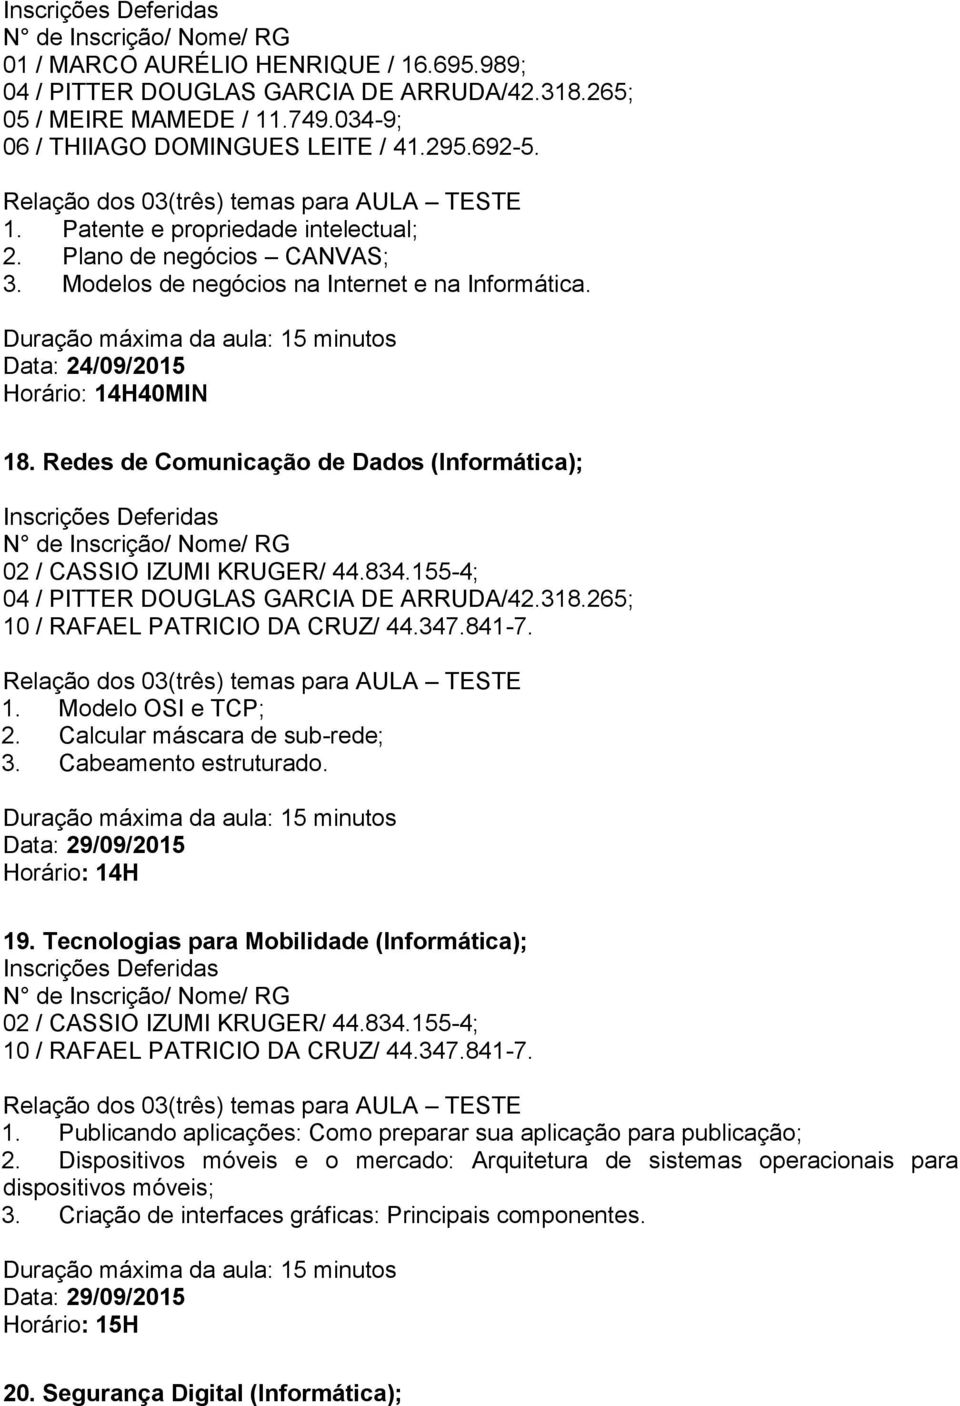 Redes de Comunicação de Dados (Informática); 04 / PITTER DOUGLAS GARCIA DE ARRUDA/42.318.265; 1. Modelo OSI e TCP; 2. Calcular máscara de sub-rede; 3. Cabeamento estruturado.